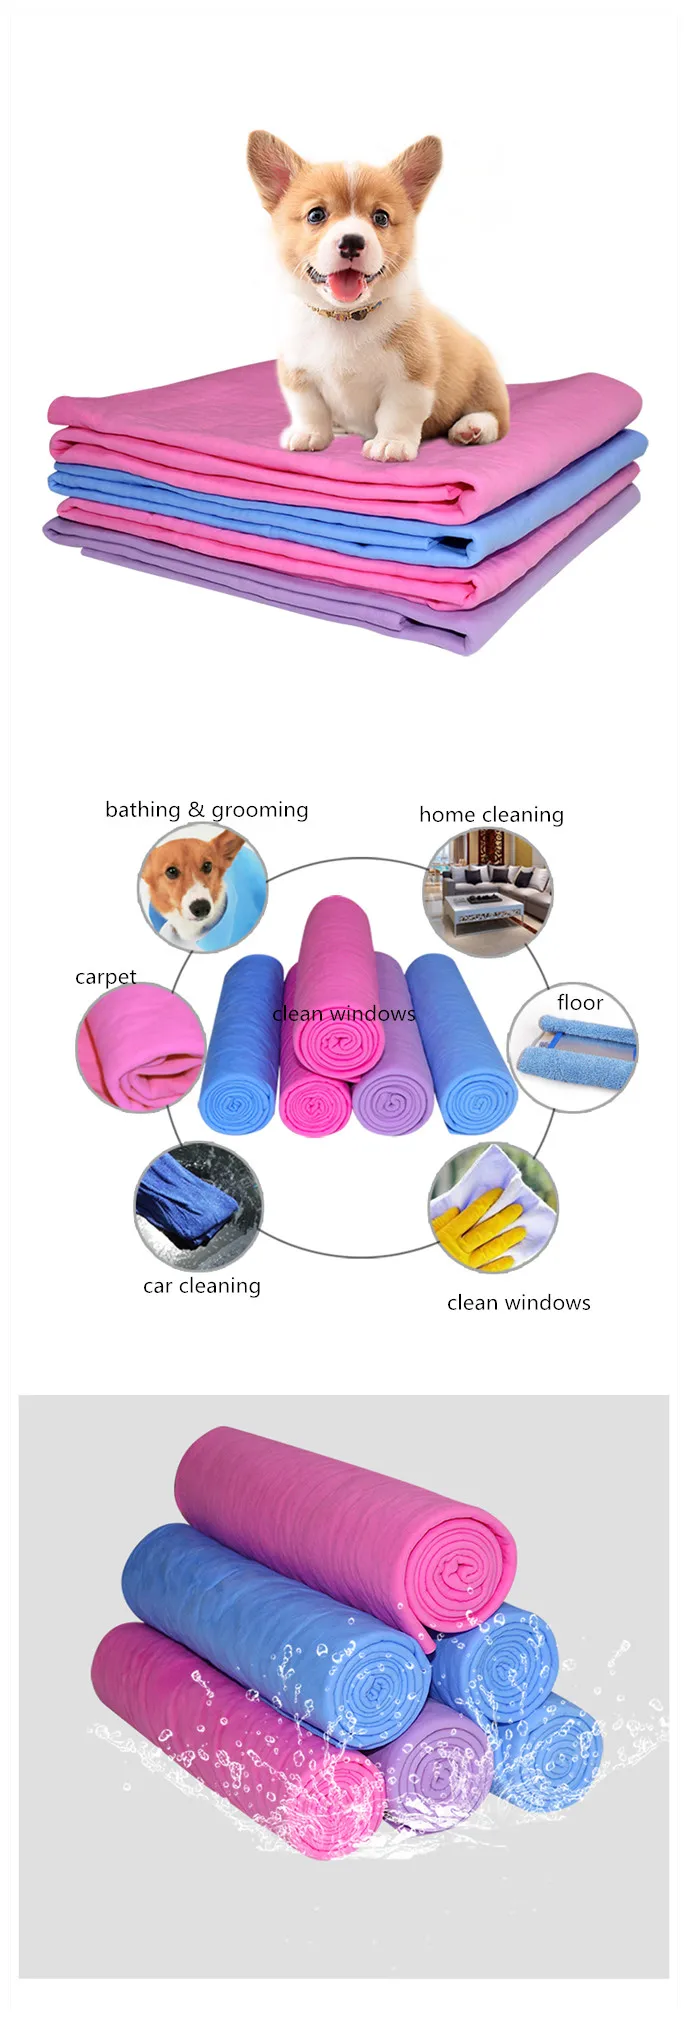 Toalla Mascota Absorbente estupendo baño de PVA de la Gamuza Perros Gatos Antibacteriano Respetuoso del Medio Ambiente y fácil de Limpiar Manera más rápida para secar su Mascota Azul